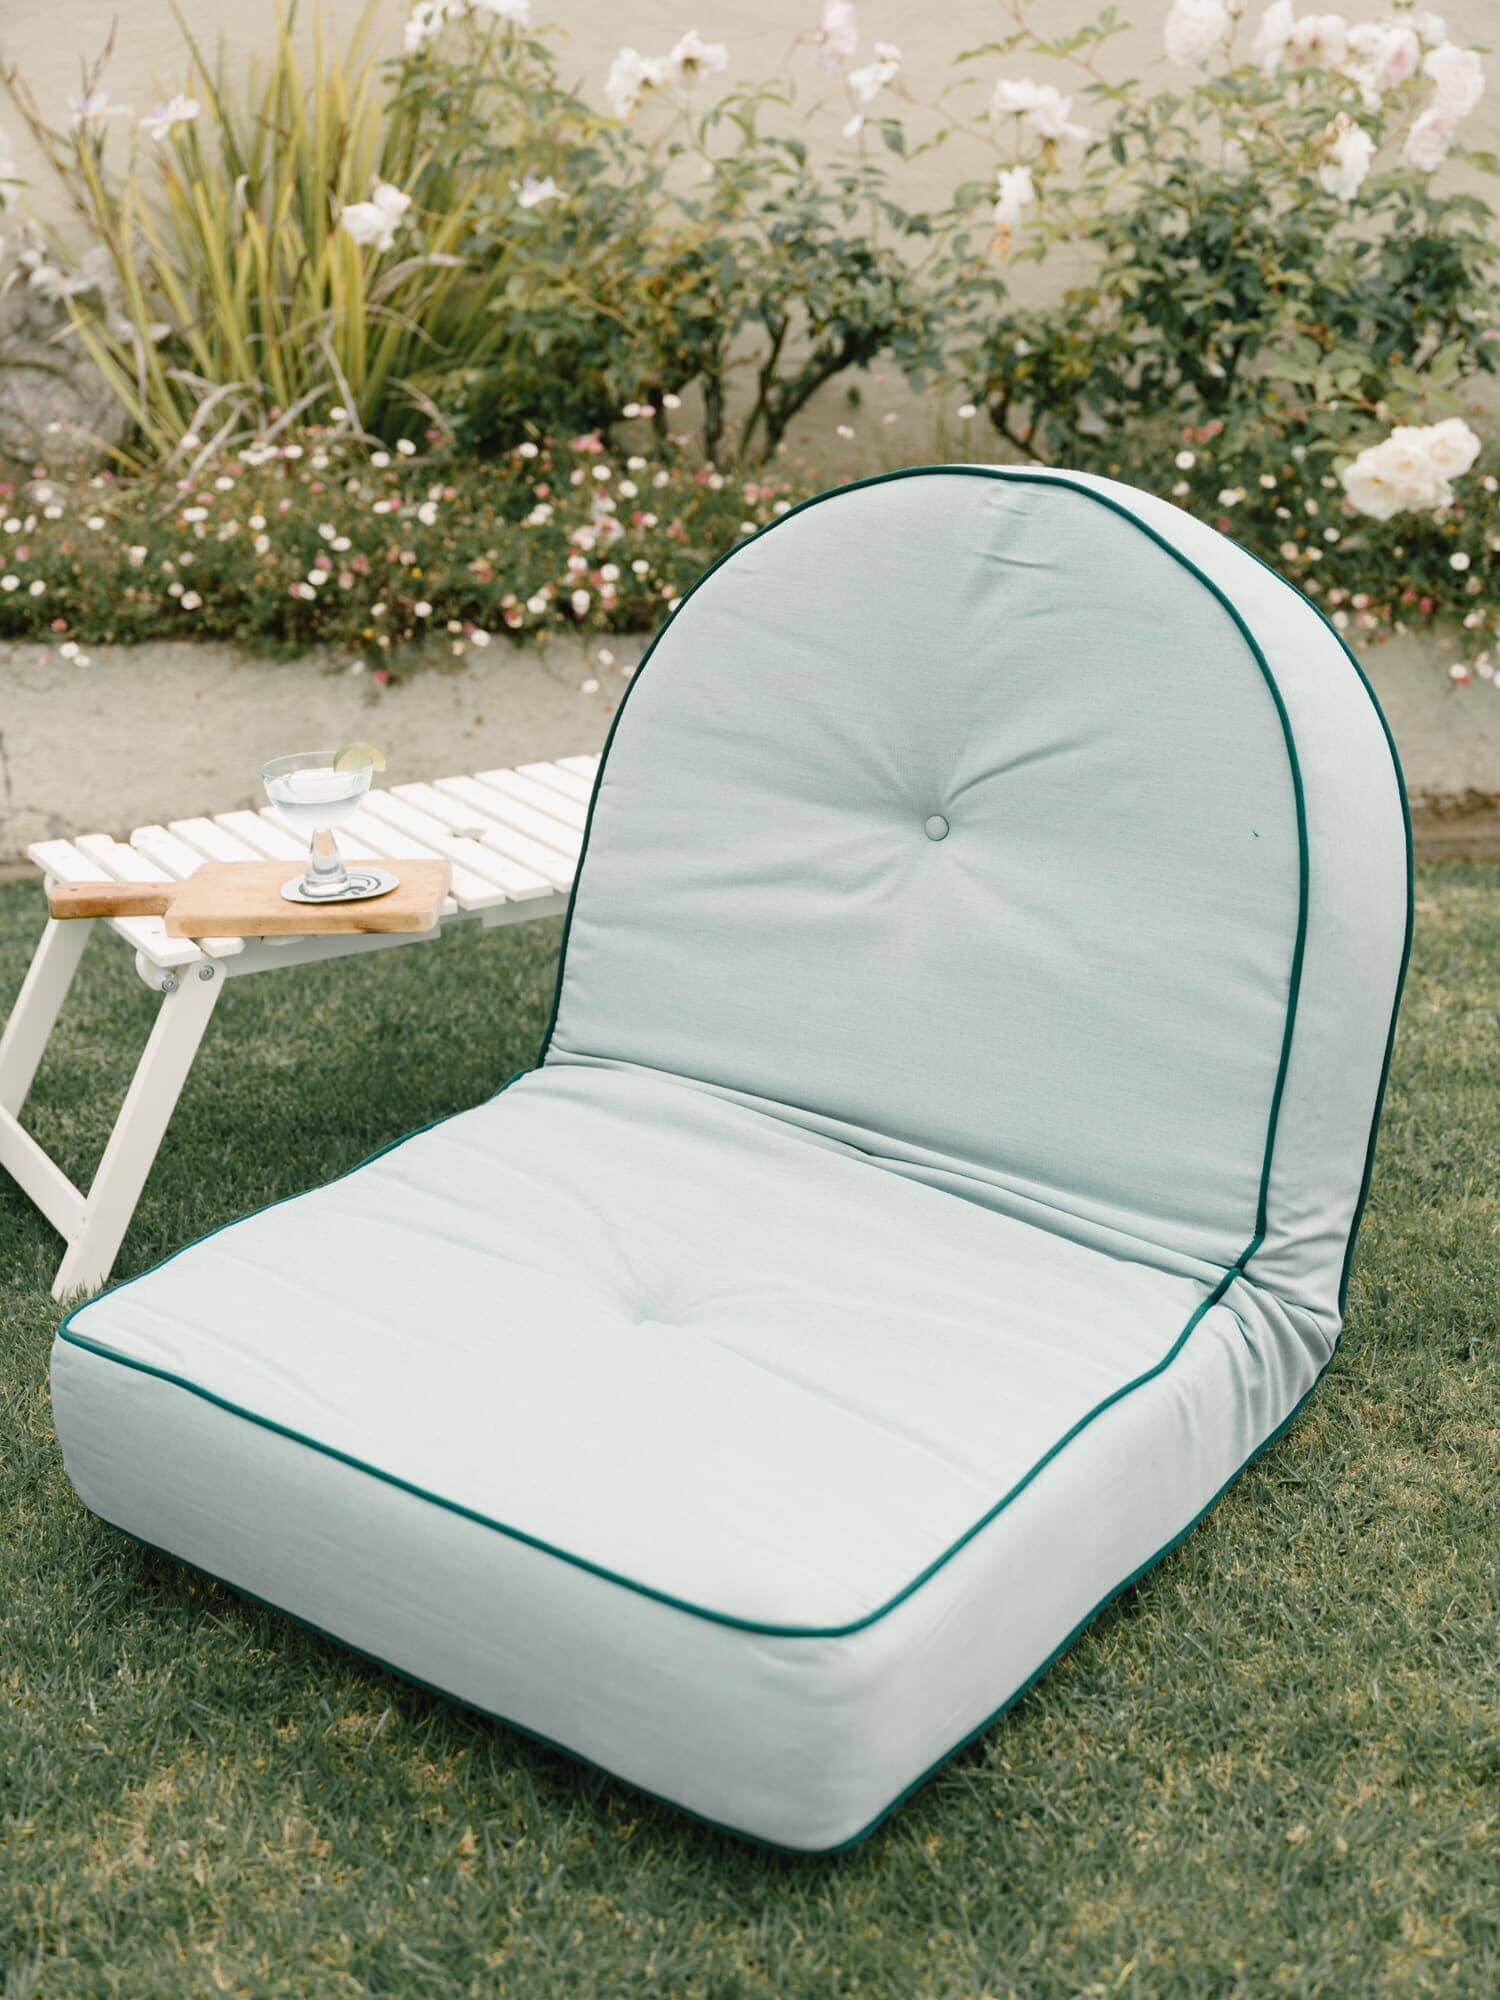 The Reclining Pillow Lounger - Rivie Green Reclining Pillow Lounger Business & Pleasure Co Aus 